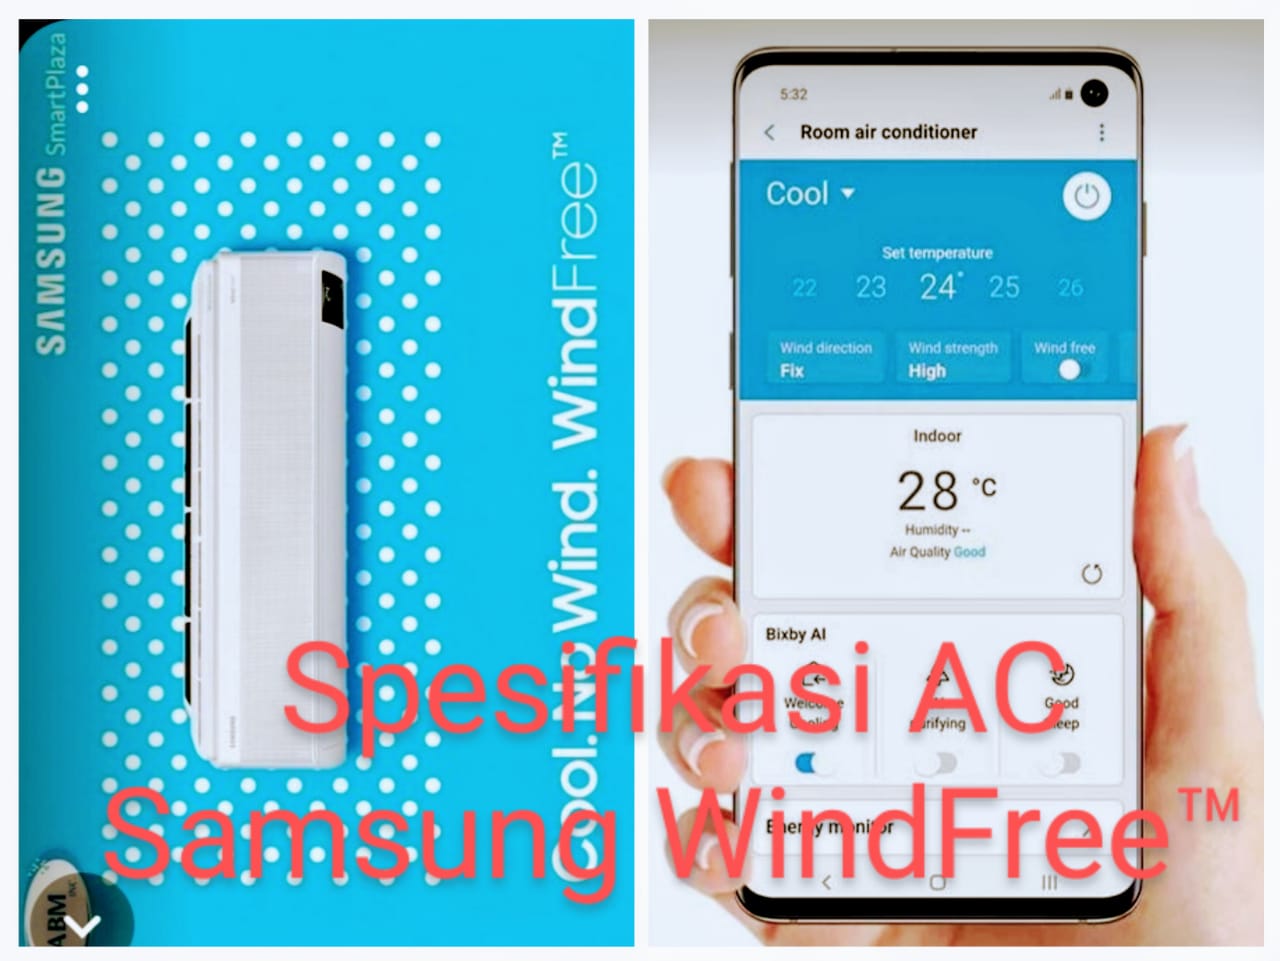 5 Spesifikasi AC Samsung WindFree™ Inovasi Terbaru Penyejuk Udara Dingin dan Bersih